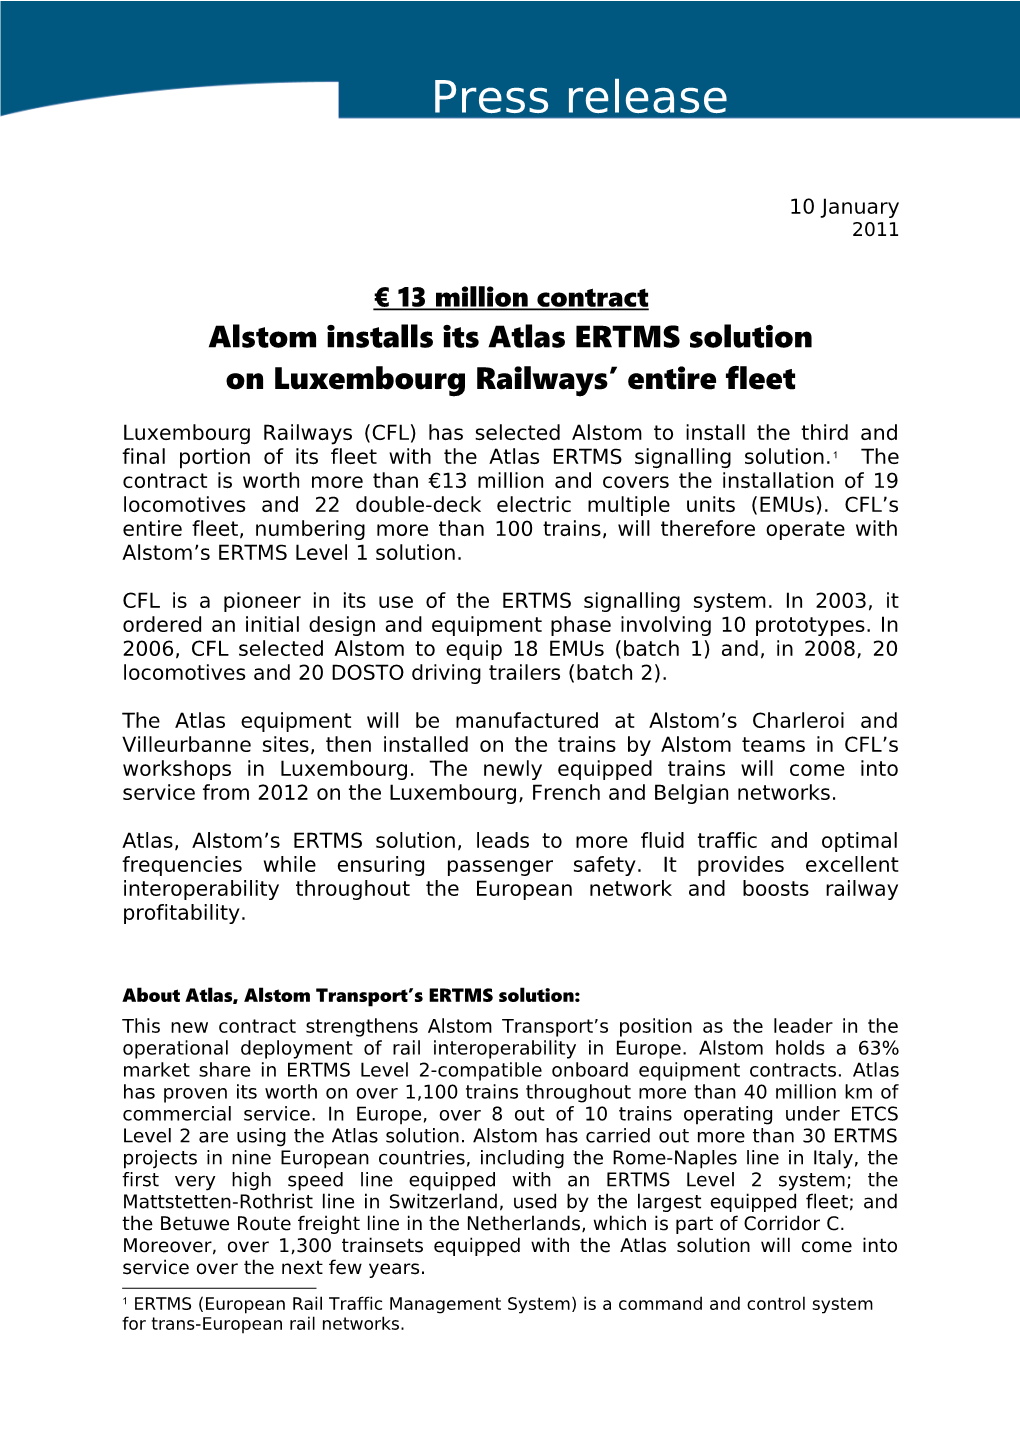 Alstom Installs Its Atlas ERTMS Solution